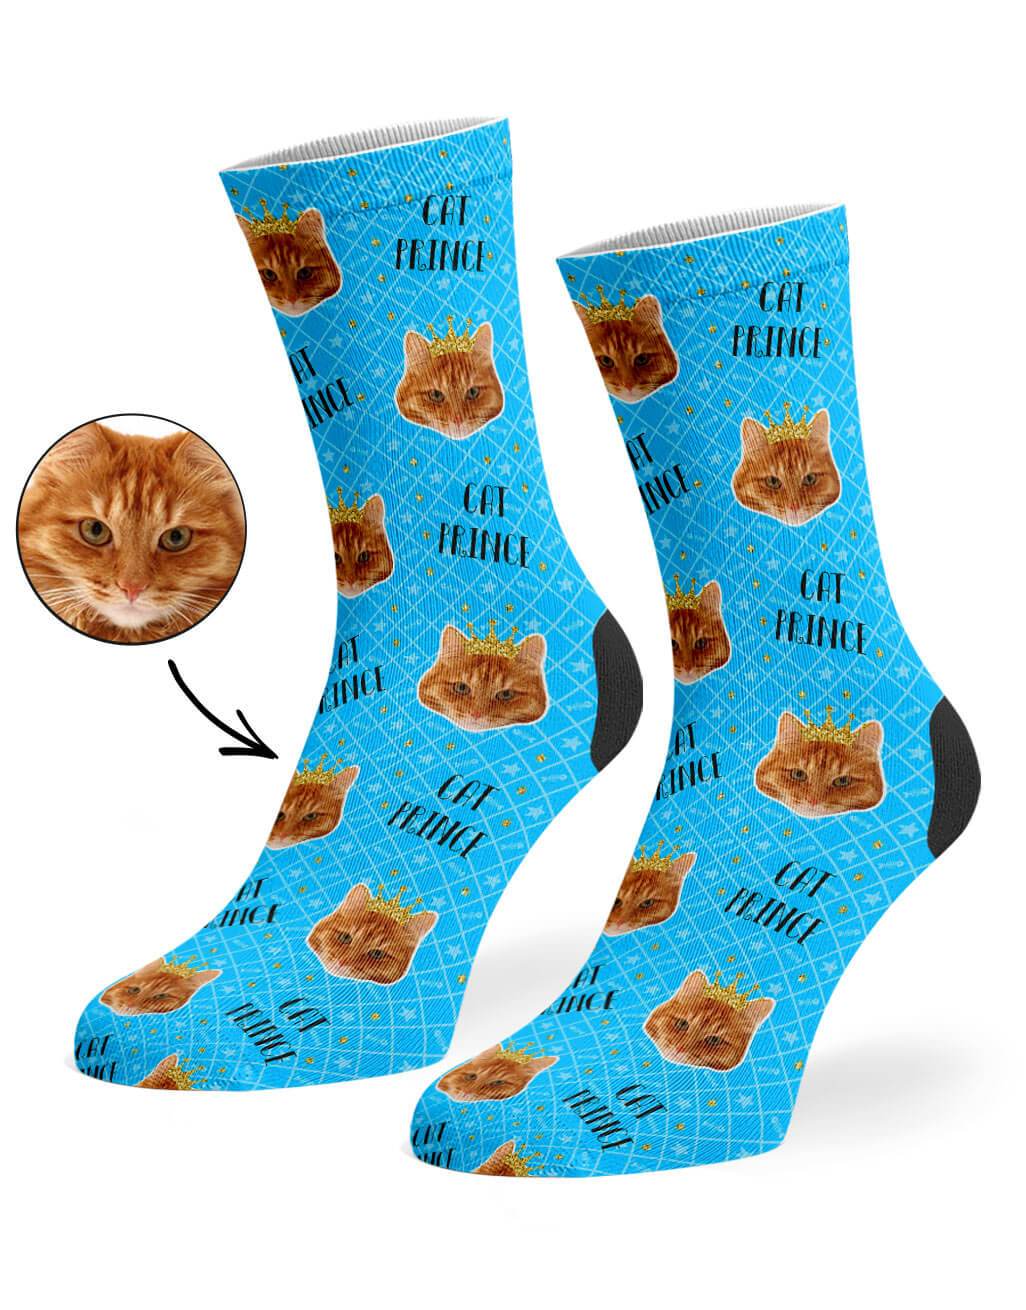 Cat Prince Custom Socks